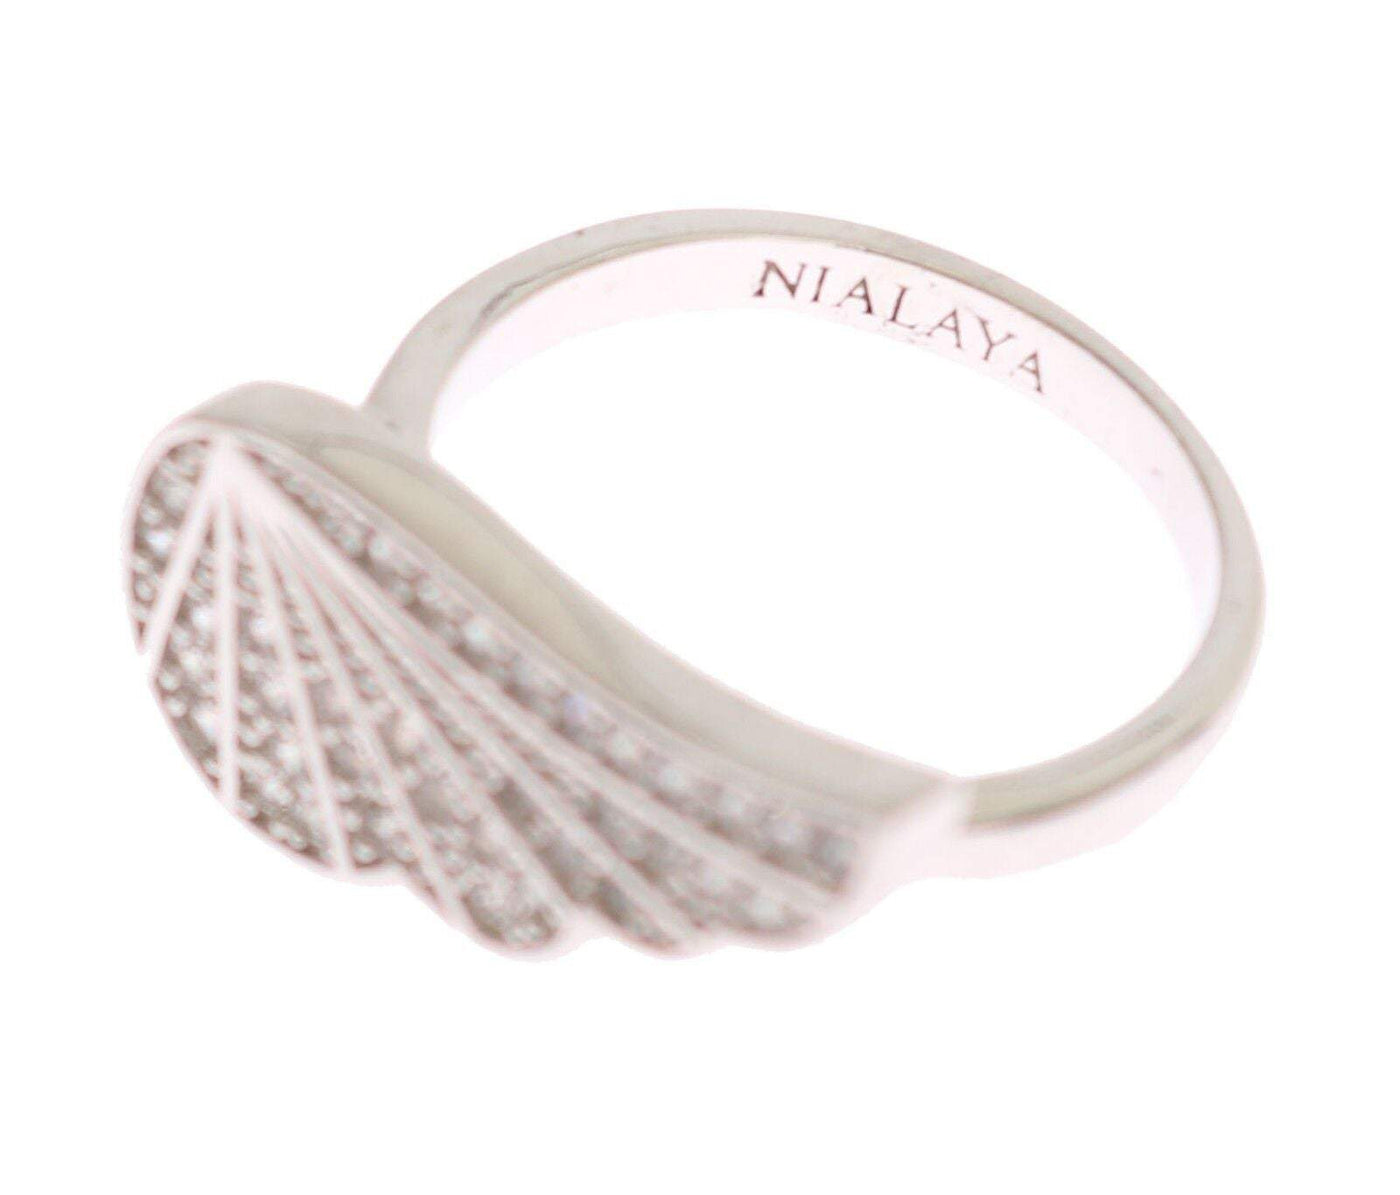 Nialaya Silver  Wing Clear CZ 925 Silver Ring EU52 | US6, EU54 | US7, EU56 | US8, feed-1, Nialaya, Rings - Women - Jewelry, Silver at SEYMAYKA